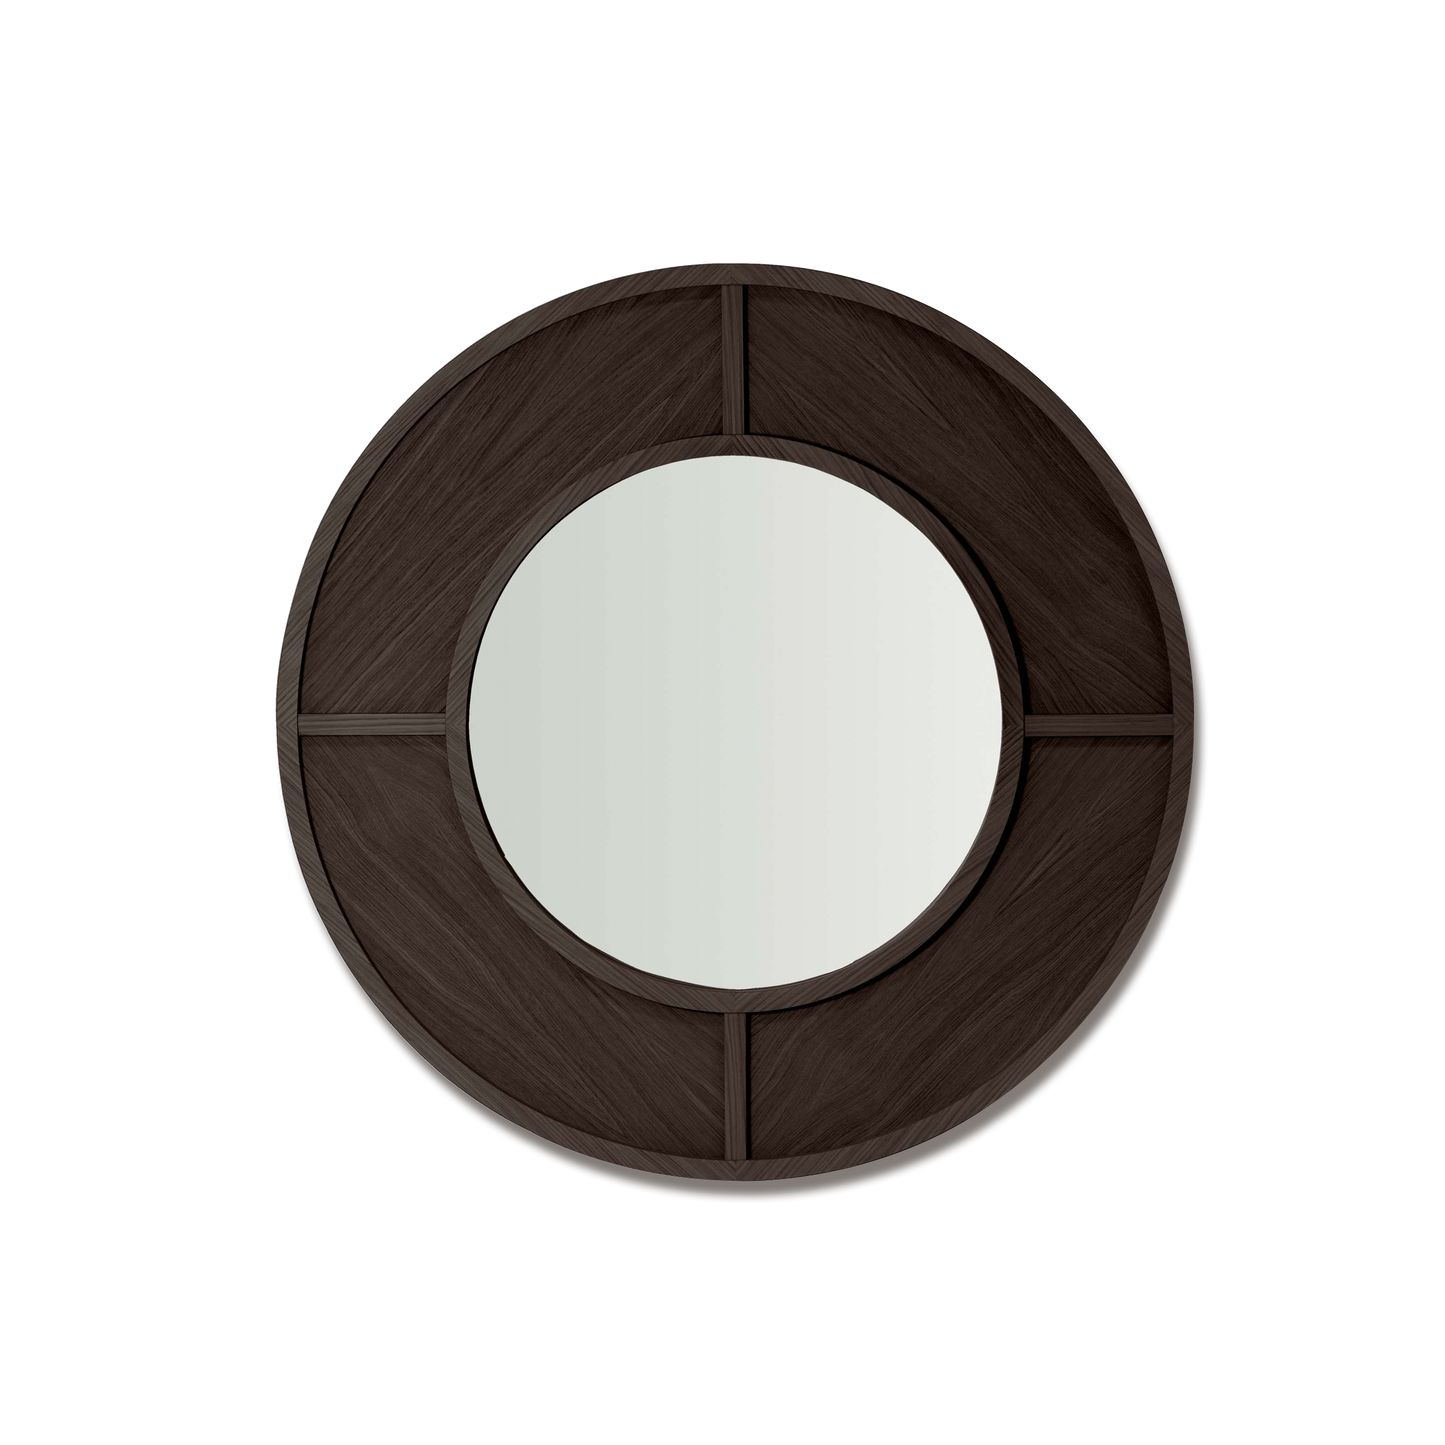  Constanza Mirror in dark grey wood